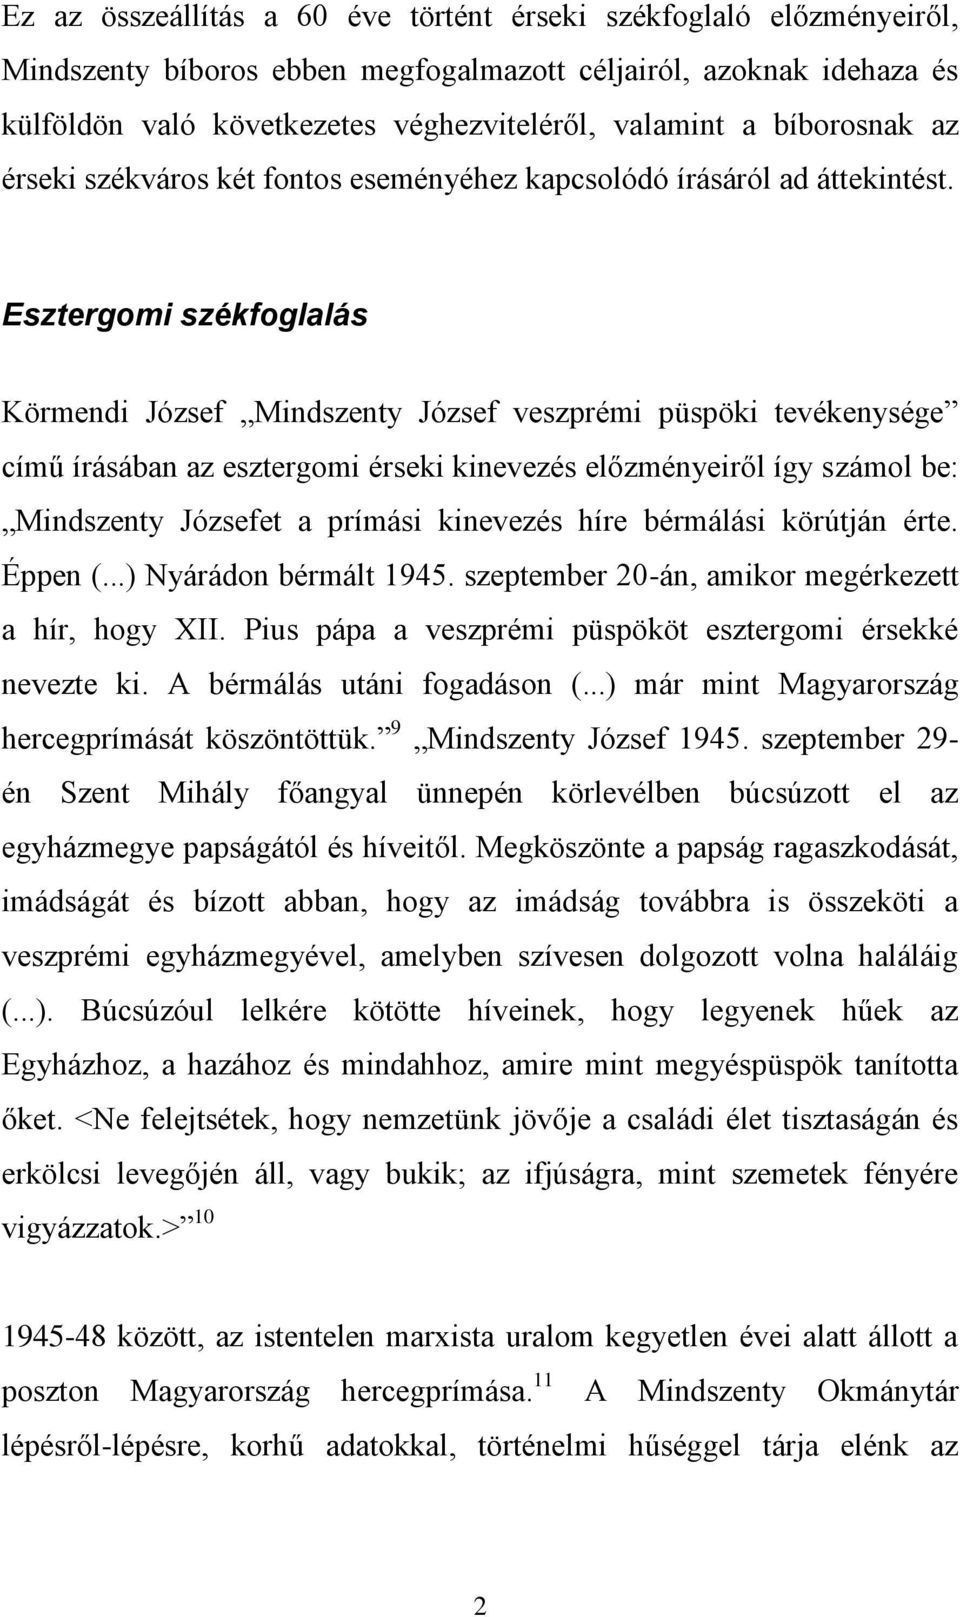 Esztergomi székfoglalás Körmendi József Mindszenty József veszprémi püspöki tevékenysége című írásában az esztergomi érseki kinevezés előzményeiről így számol be: Mindszenty Józsefet a prímási